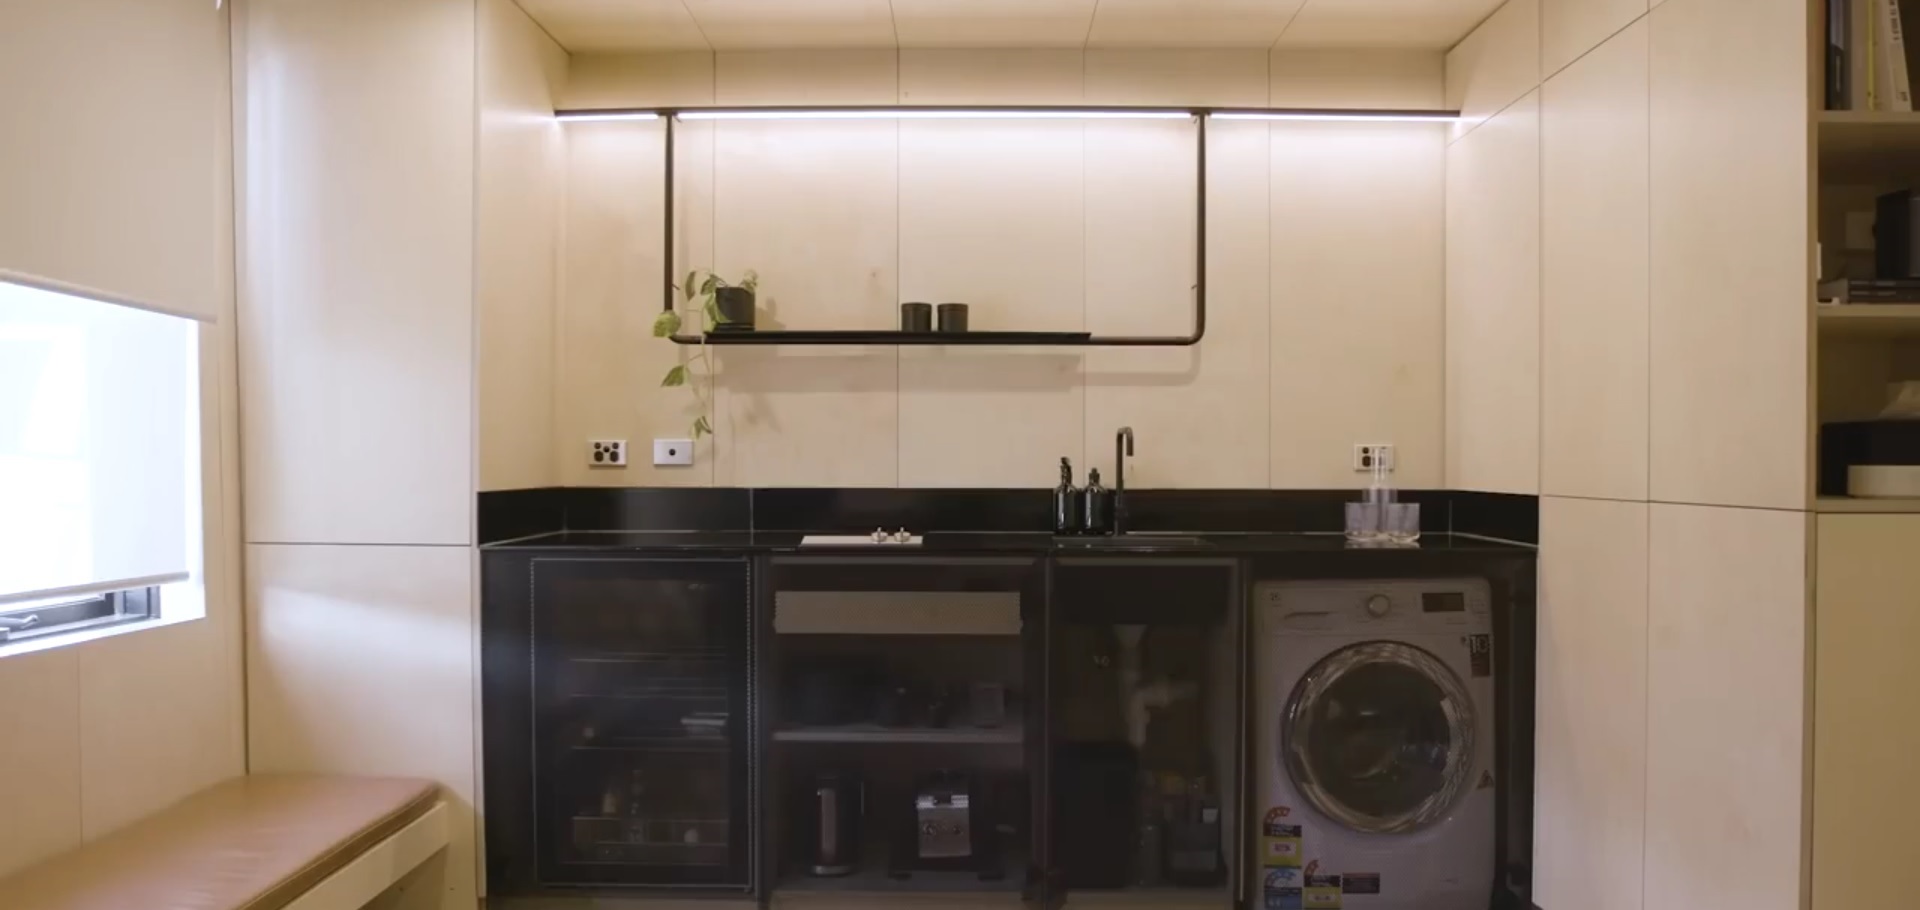 ویدیو : دکوراسیون داخلی میکرو آپارتمان ۲۹ مترمربعی